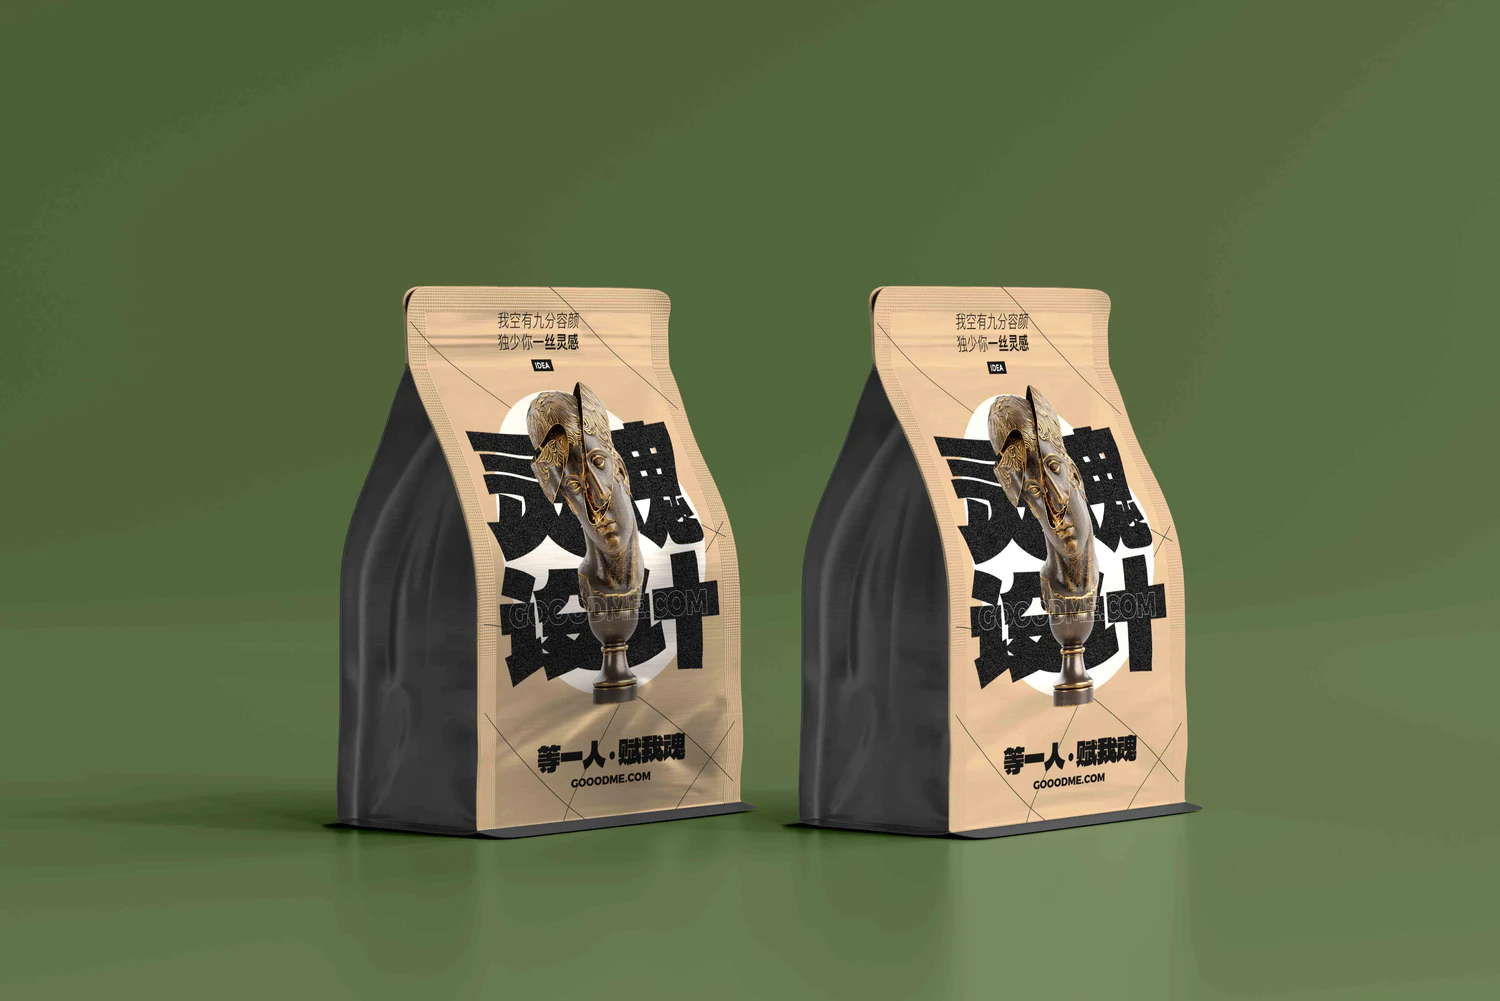 3794 24款可商用茶叶企业品牌设计PSD样机模型免抠素材包